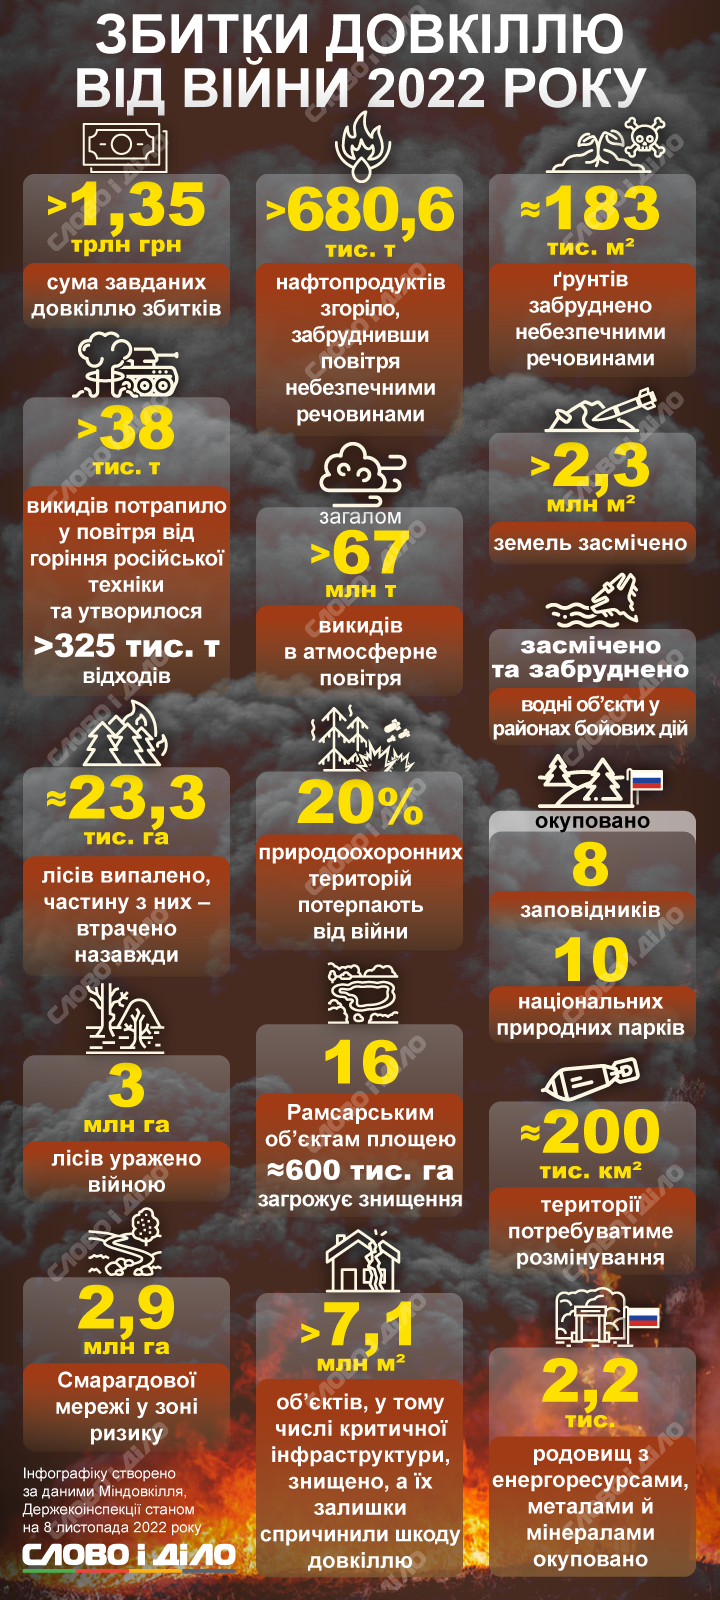 В результате российской агрессии в Украине пострадало 3 млн гектаров леса, под угрозой уничтожения находятся заповедные территории, в воздух и грунты попали миллионы тонн вредных веществ.